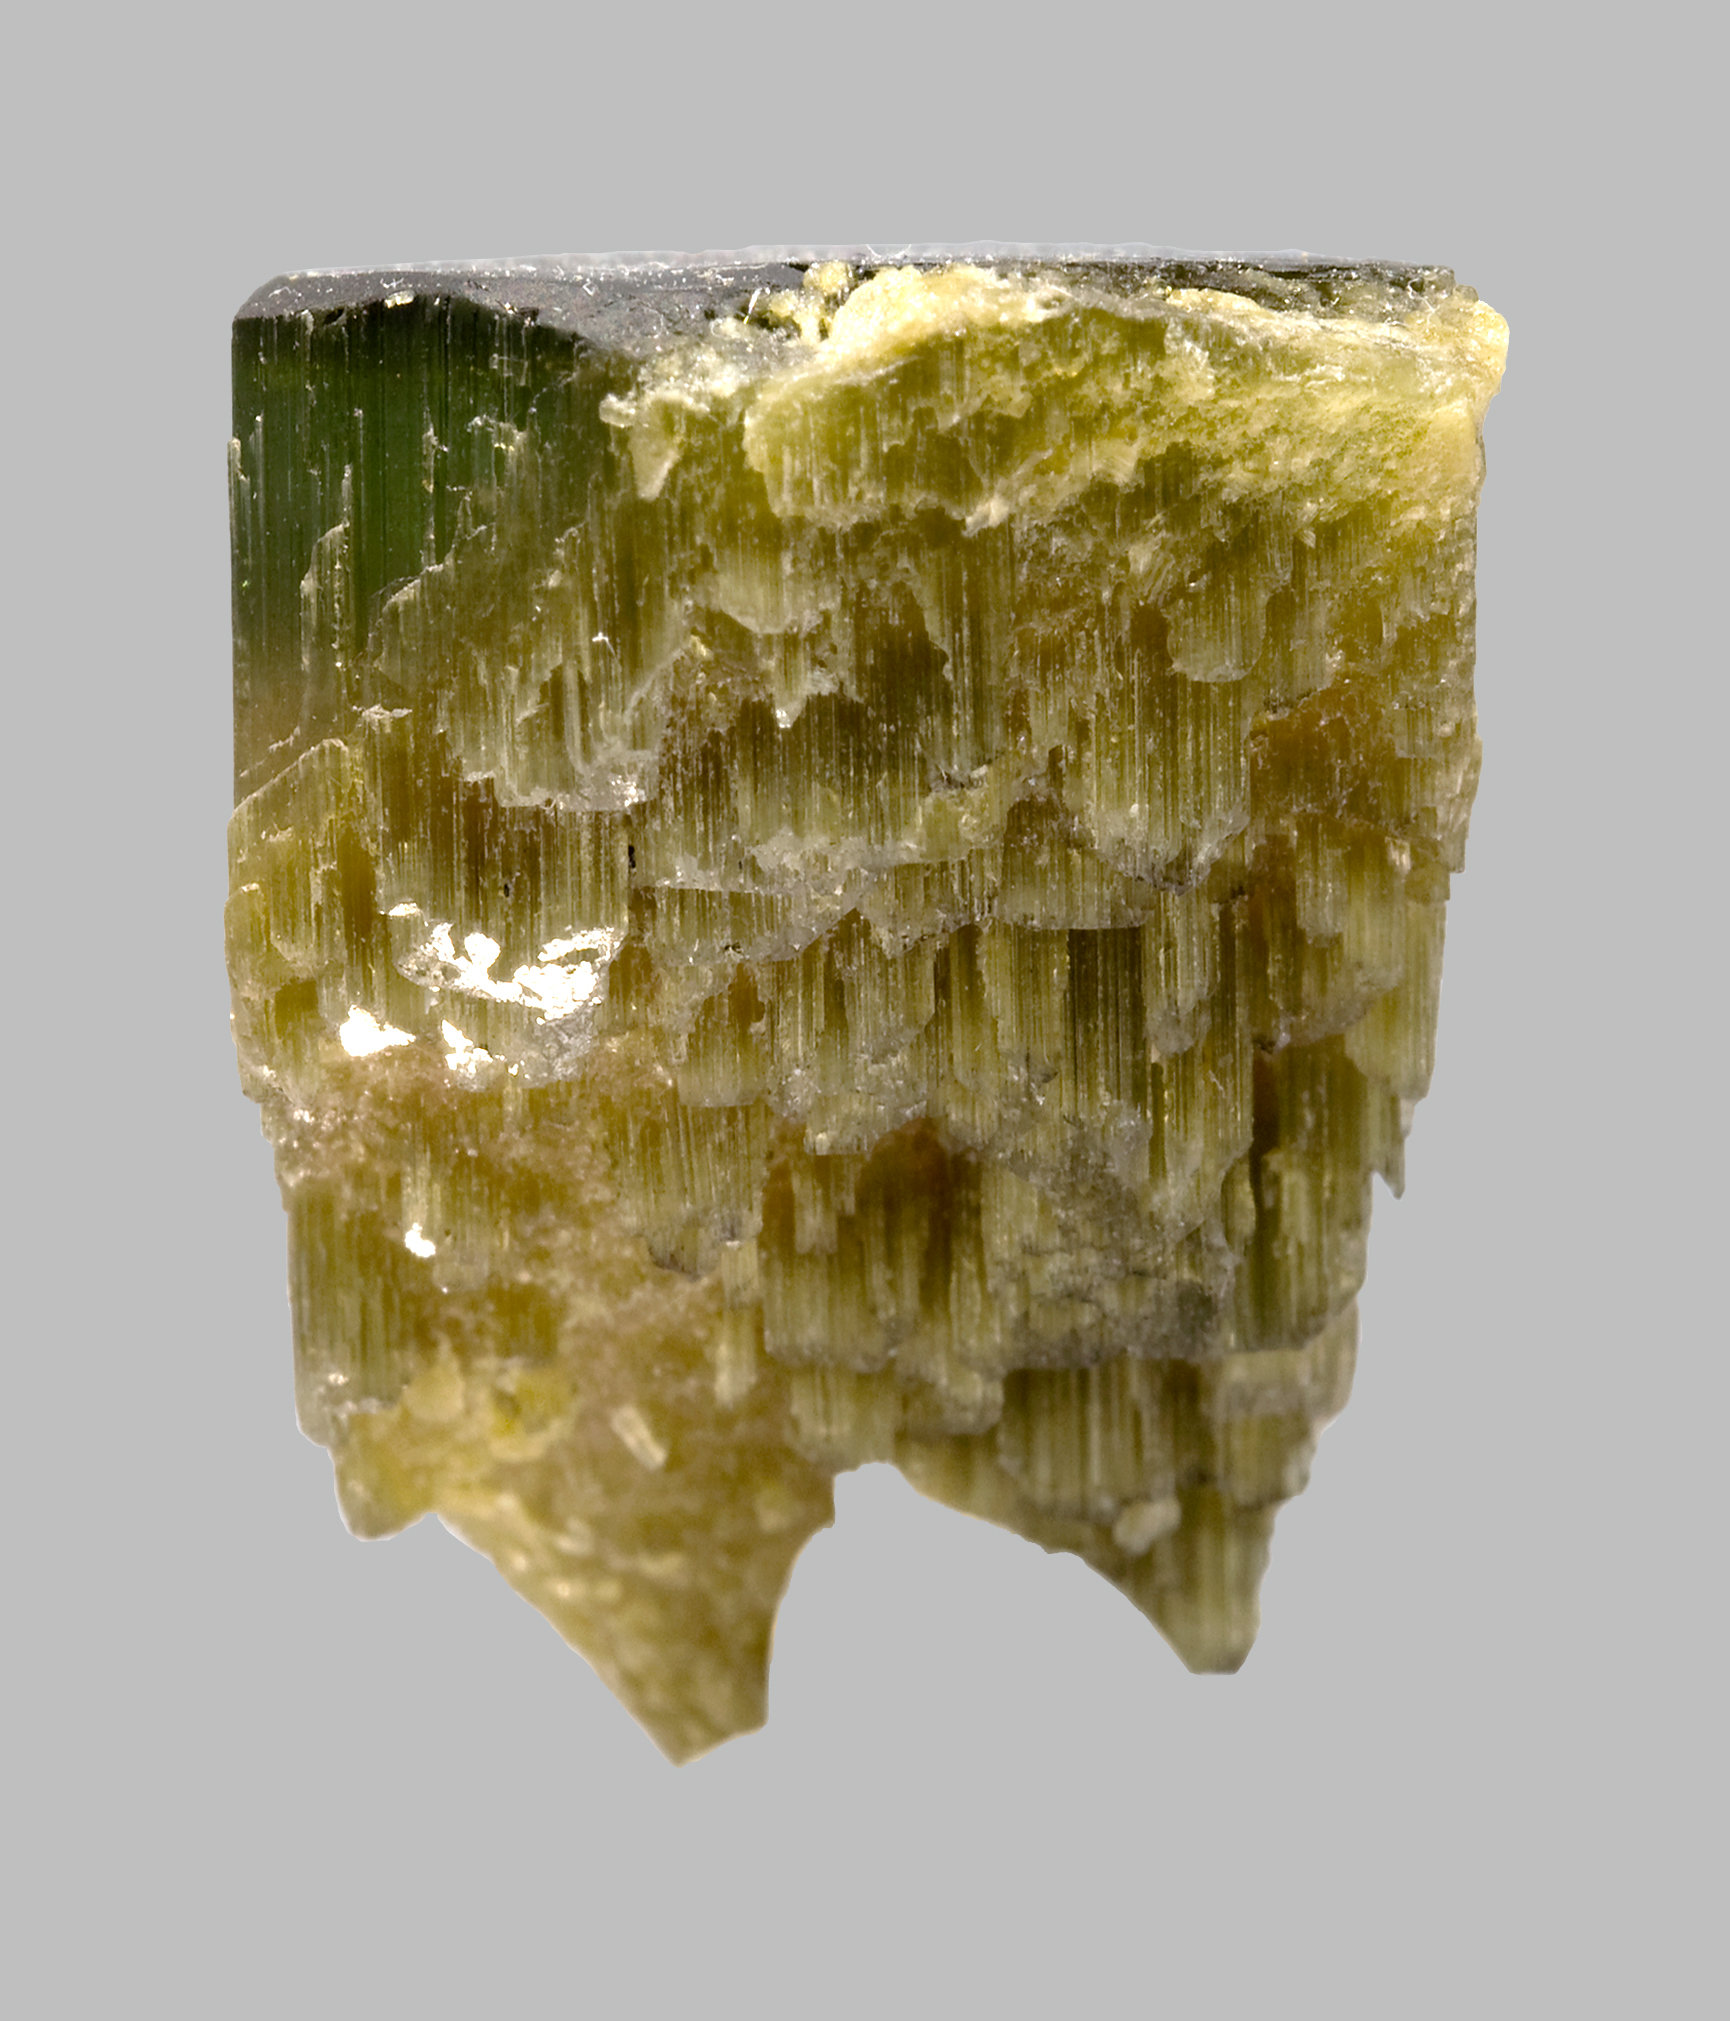 specimens/s_imagesCM/Elbaite-8TG27W4r.jpg